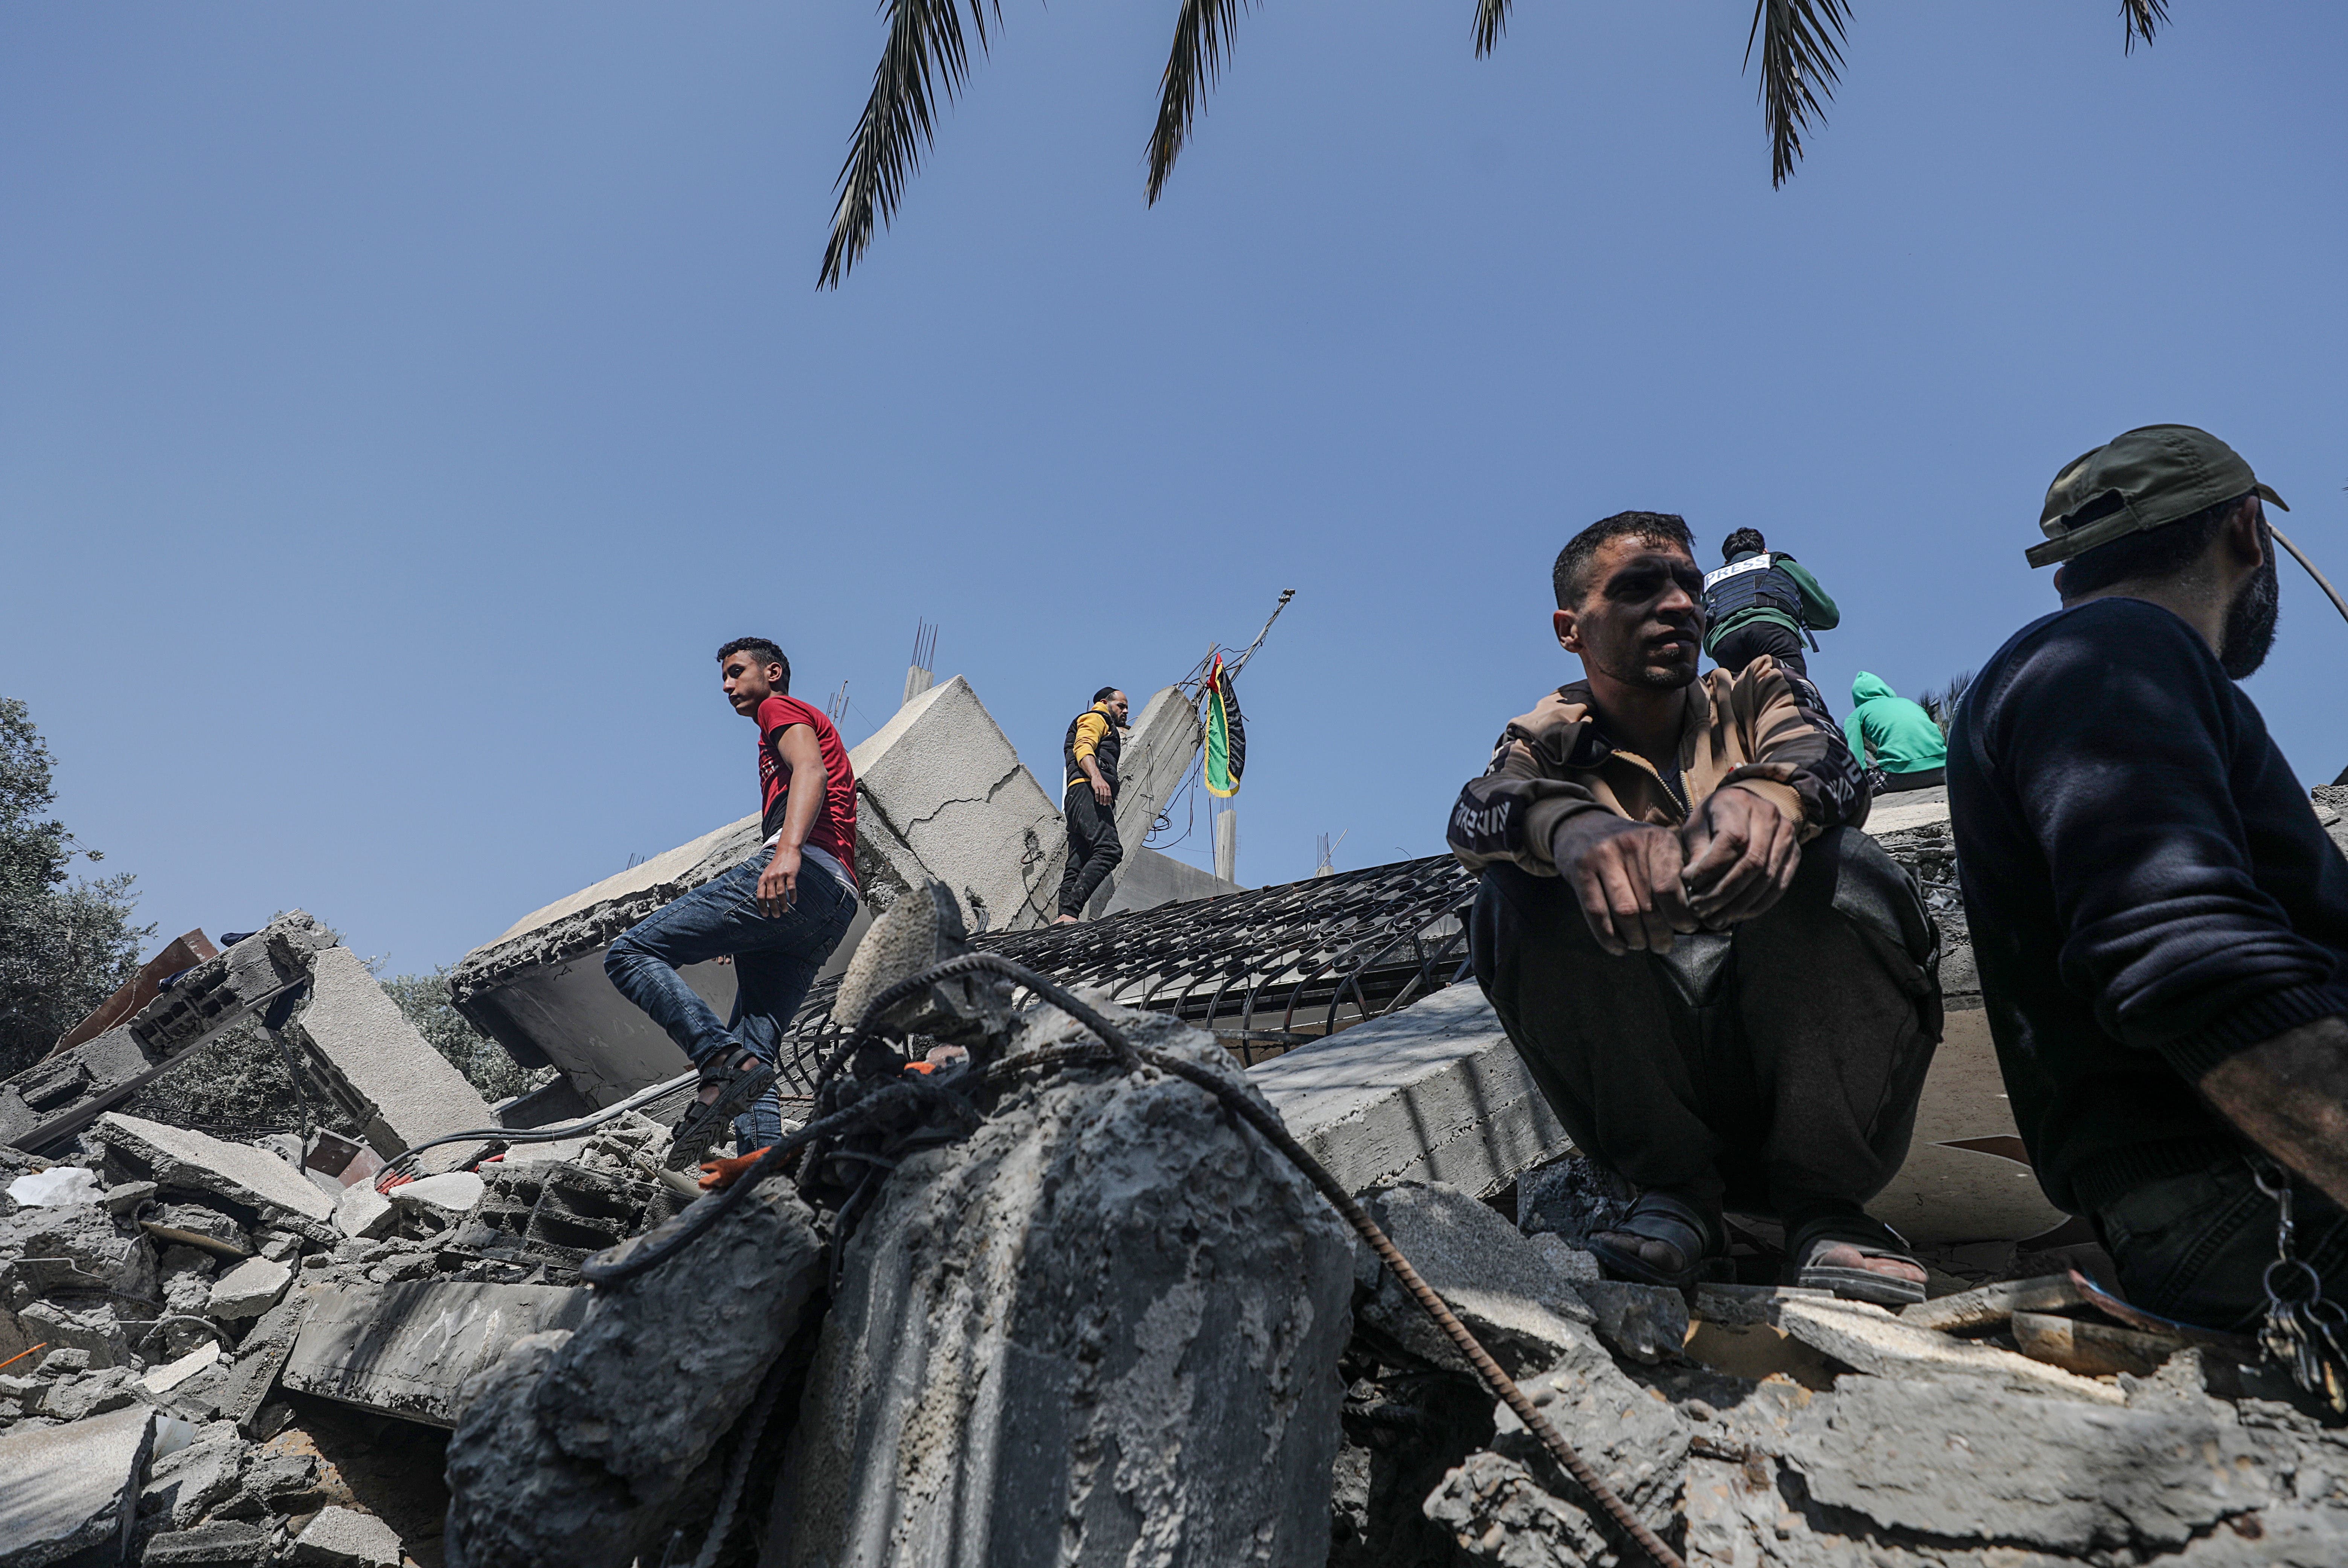 Continúa el intercambio de fuego entre Israel y Gaza; suman 25 muertos